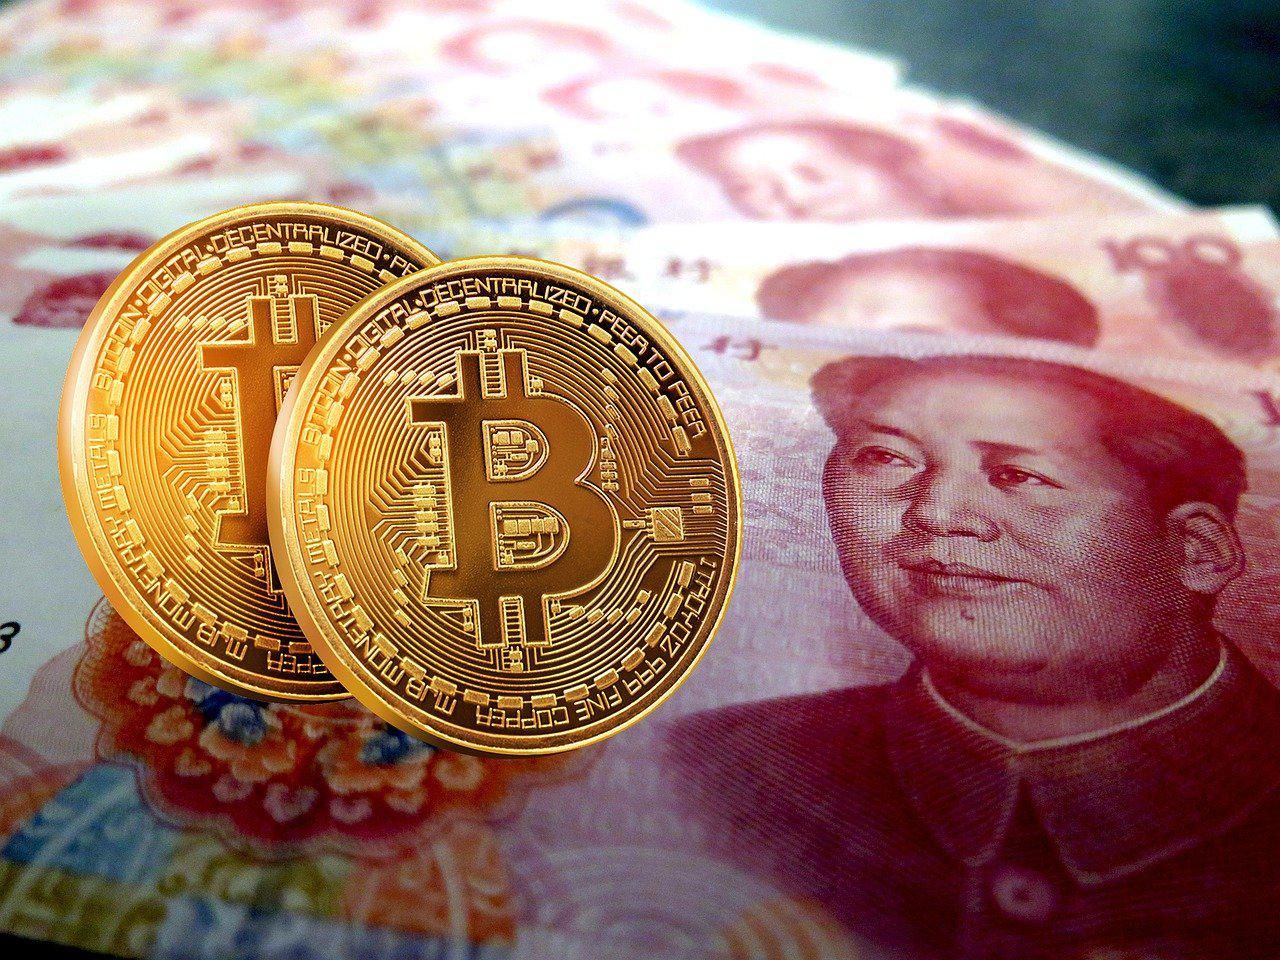 Két bitcoin látható több, sorba rendezett kínai jüan papírpénz előtt, Kína a kriptovaluták betiltása után NFT-blokkláncot épít